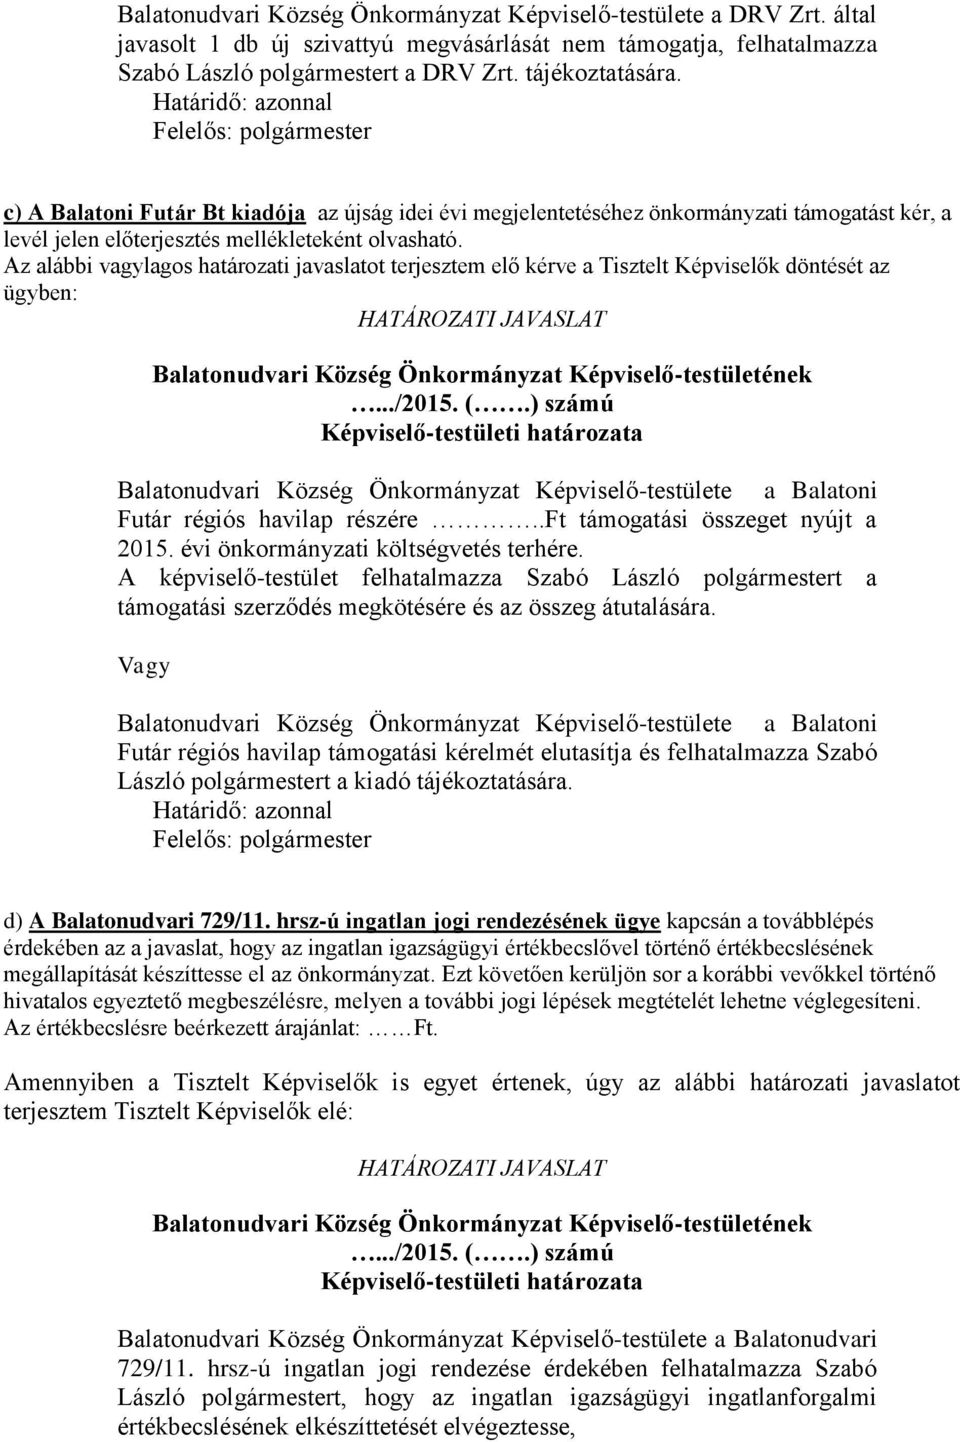 Az alábbi vagylagos határozati javaslatot terjesztem elő kérve a Tisztelt Képviselők döntését az ügyben: Balatonudvari Község Önkormányzat Képviselő-testülete a Balatoni Futár régiós havilap részére.